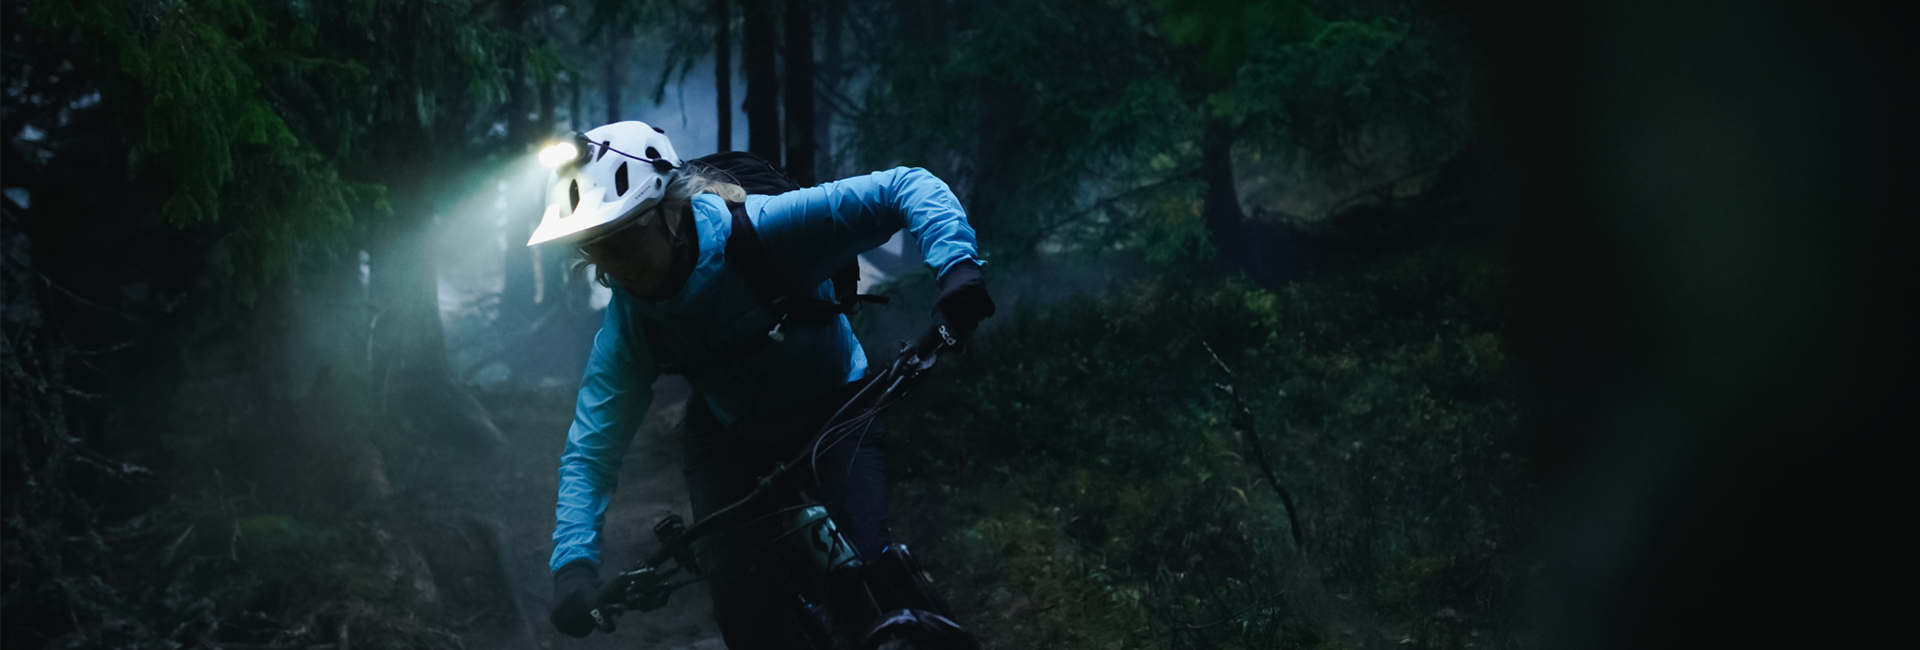 Ein Mountainbiker mit Helmlampe im Wald